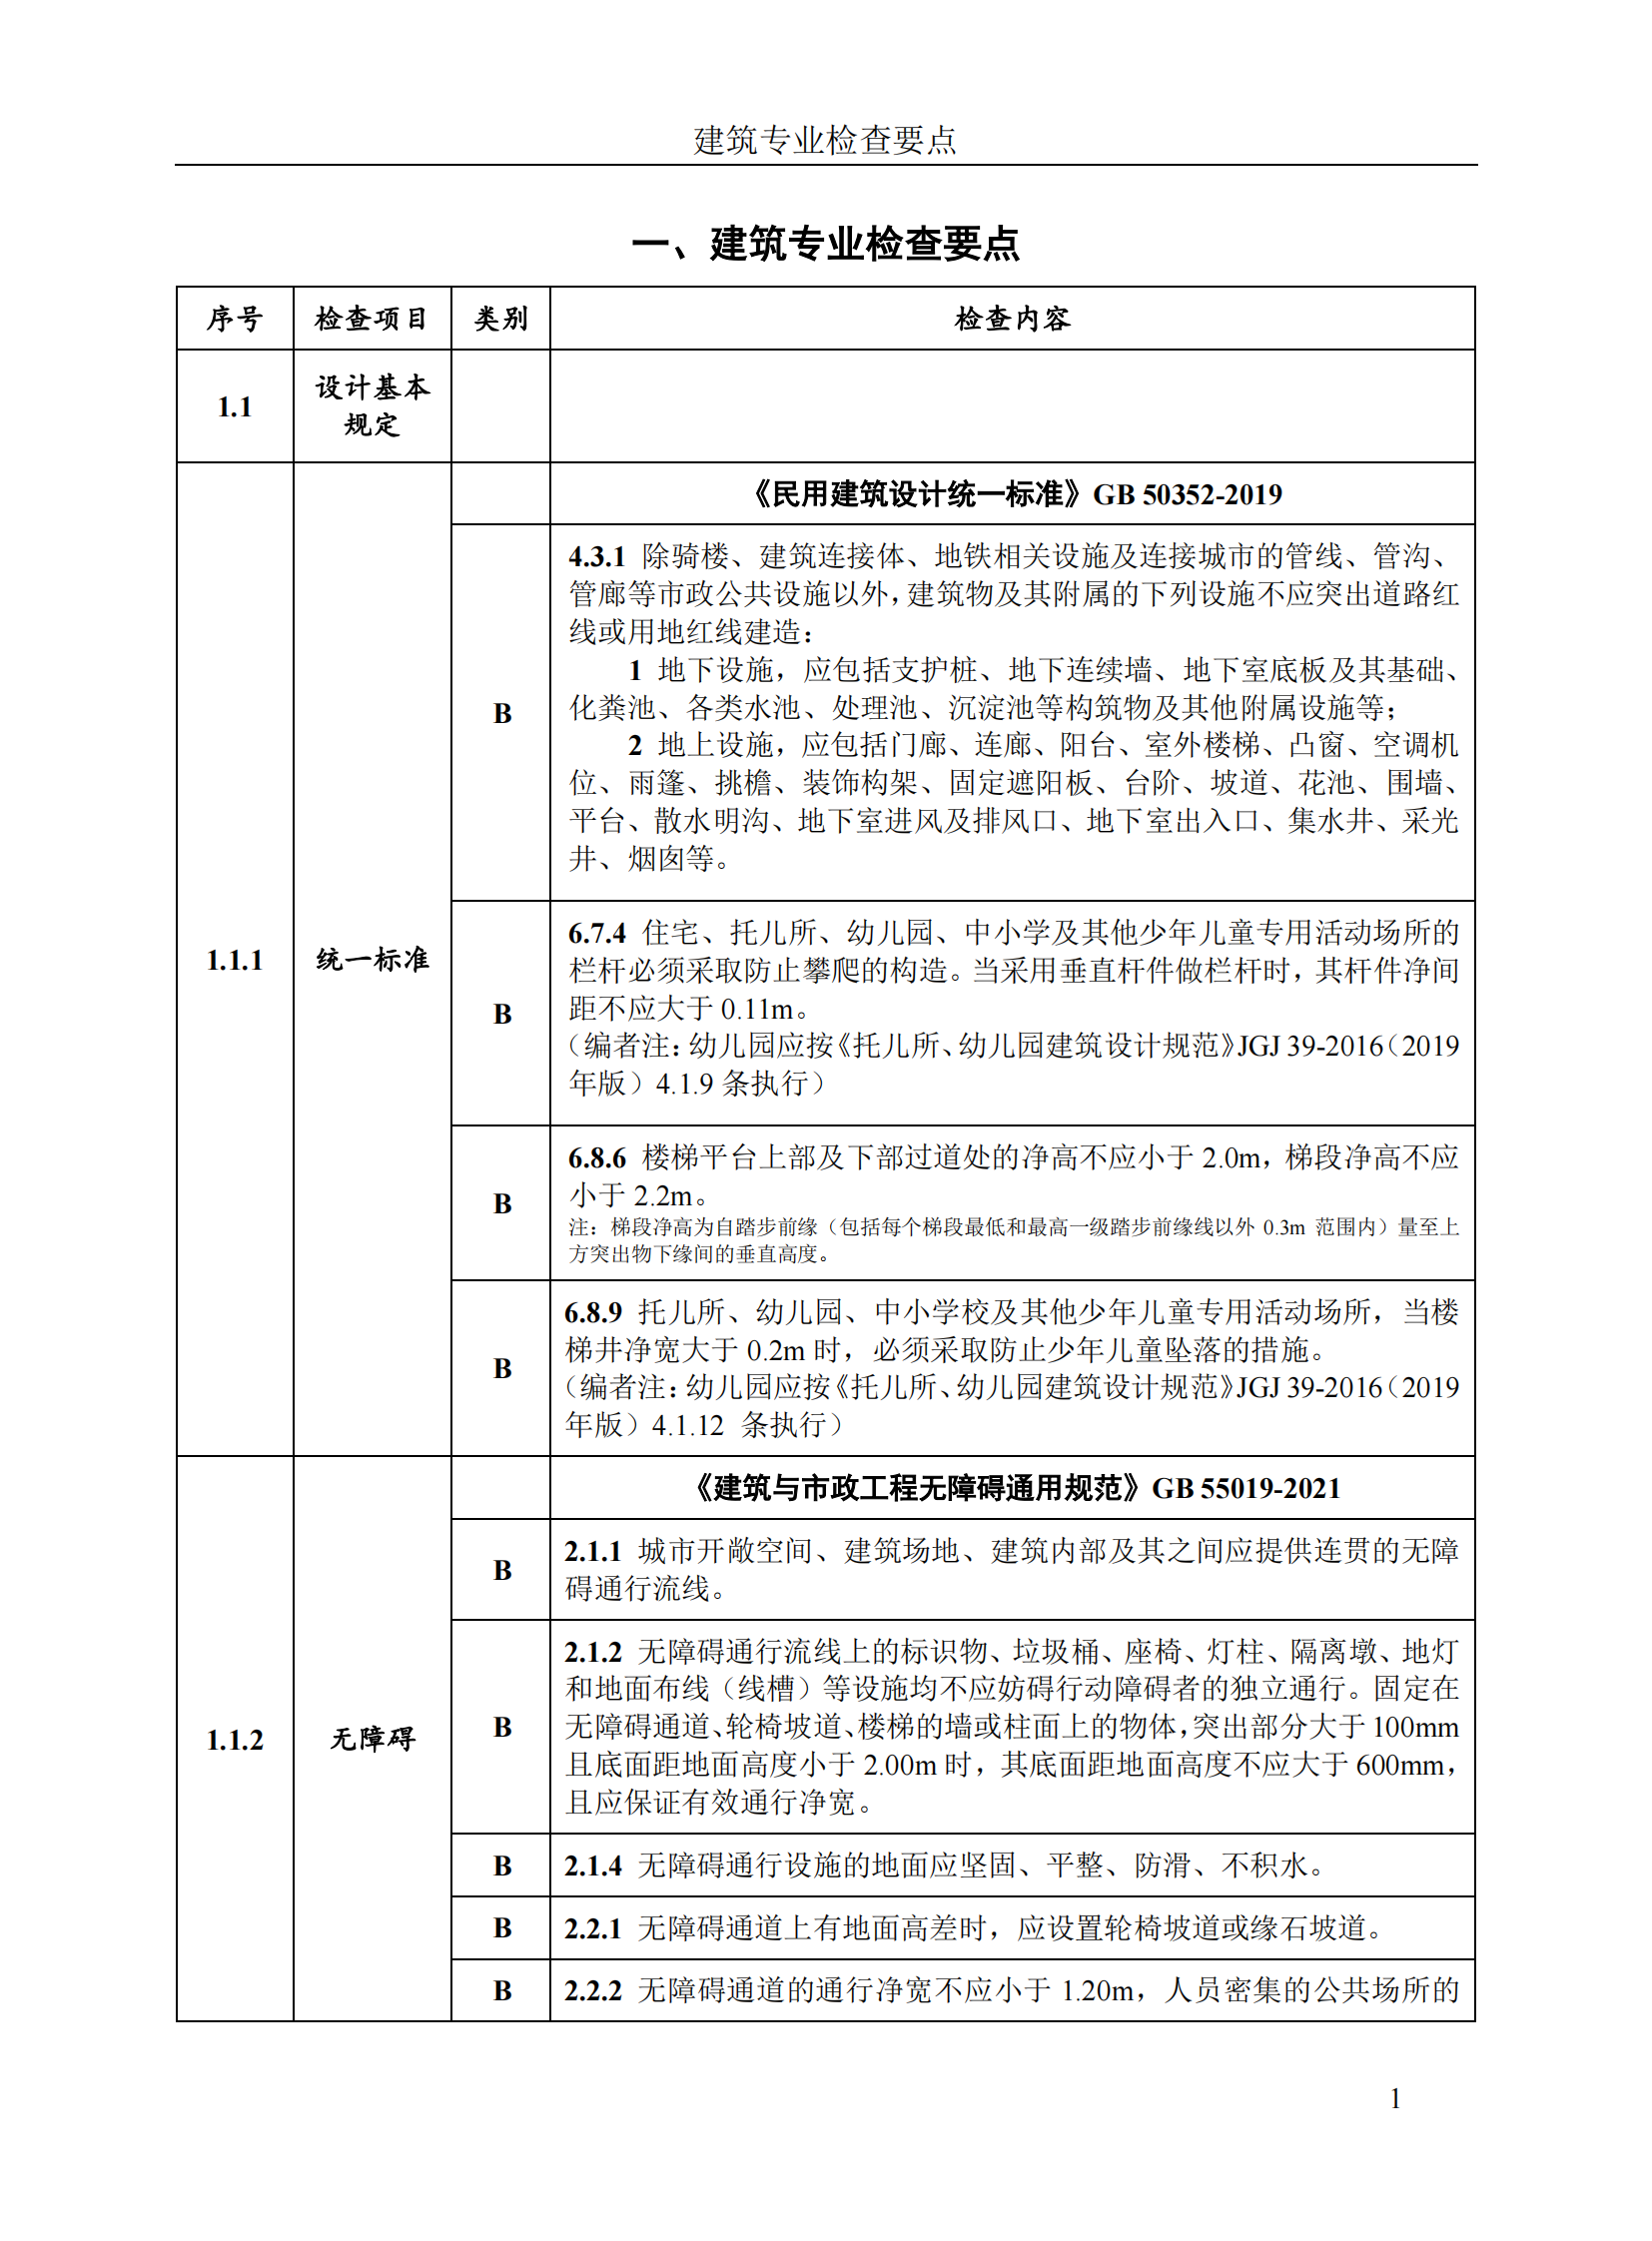 北京市房屋建筑工程施工图事后检查要点（上下册）插图(7)